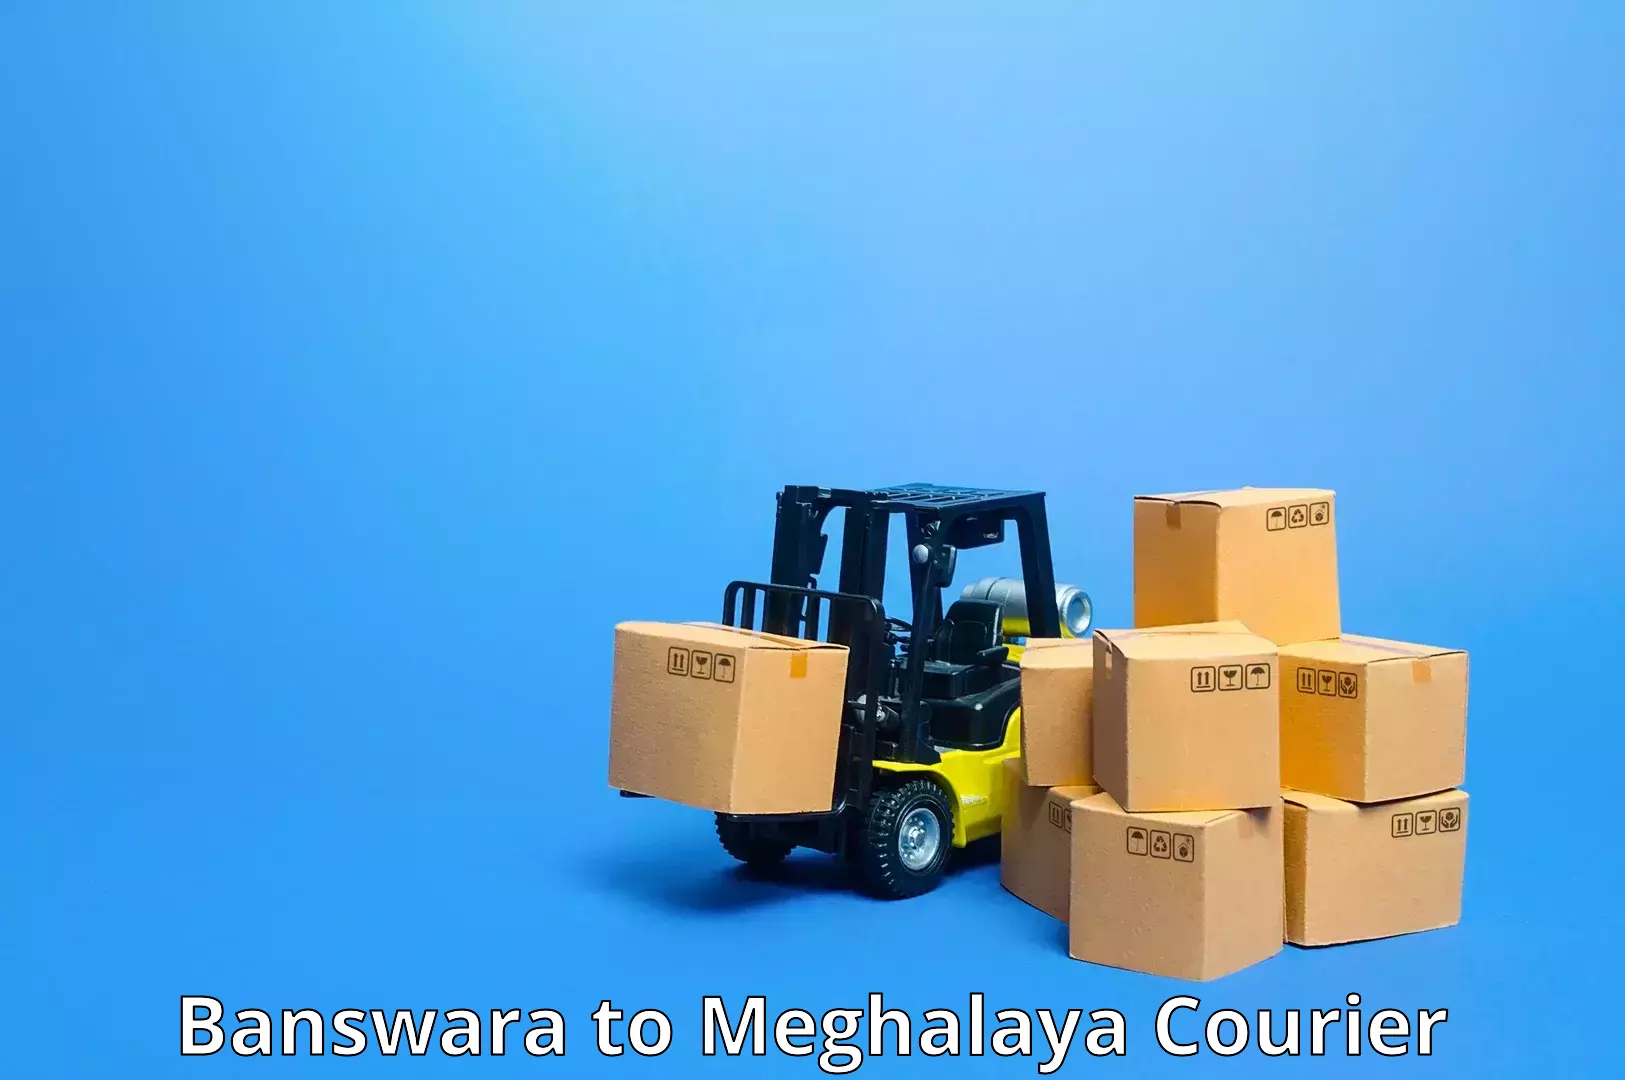 Express mail service Banswara to Meghalaya